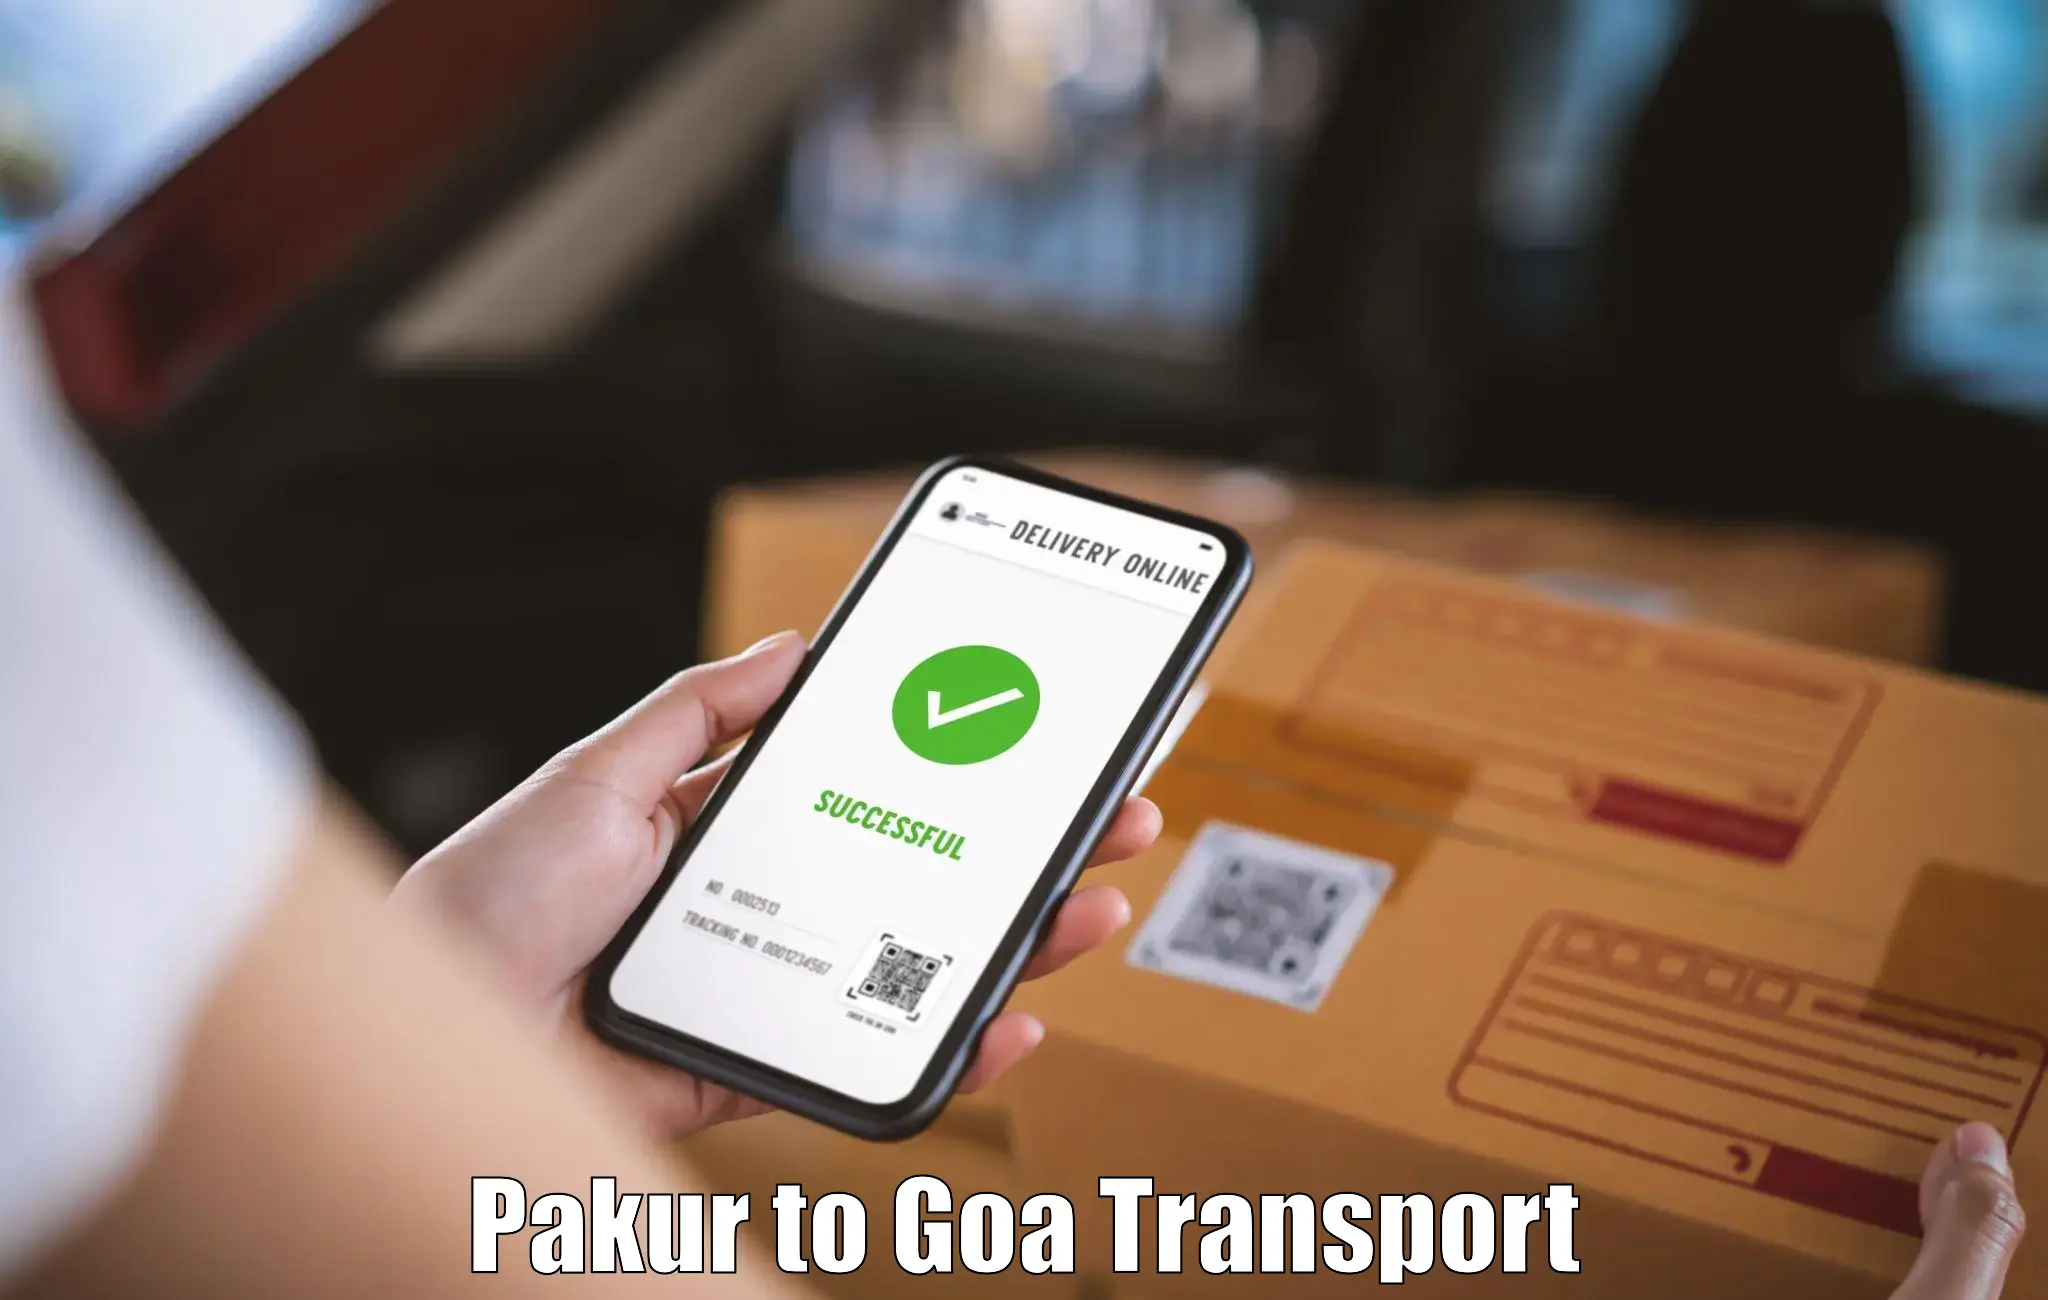 Door to door transport services Pakur to Goa